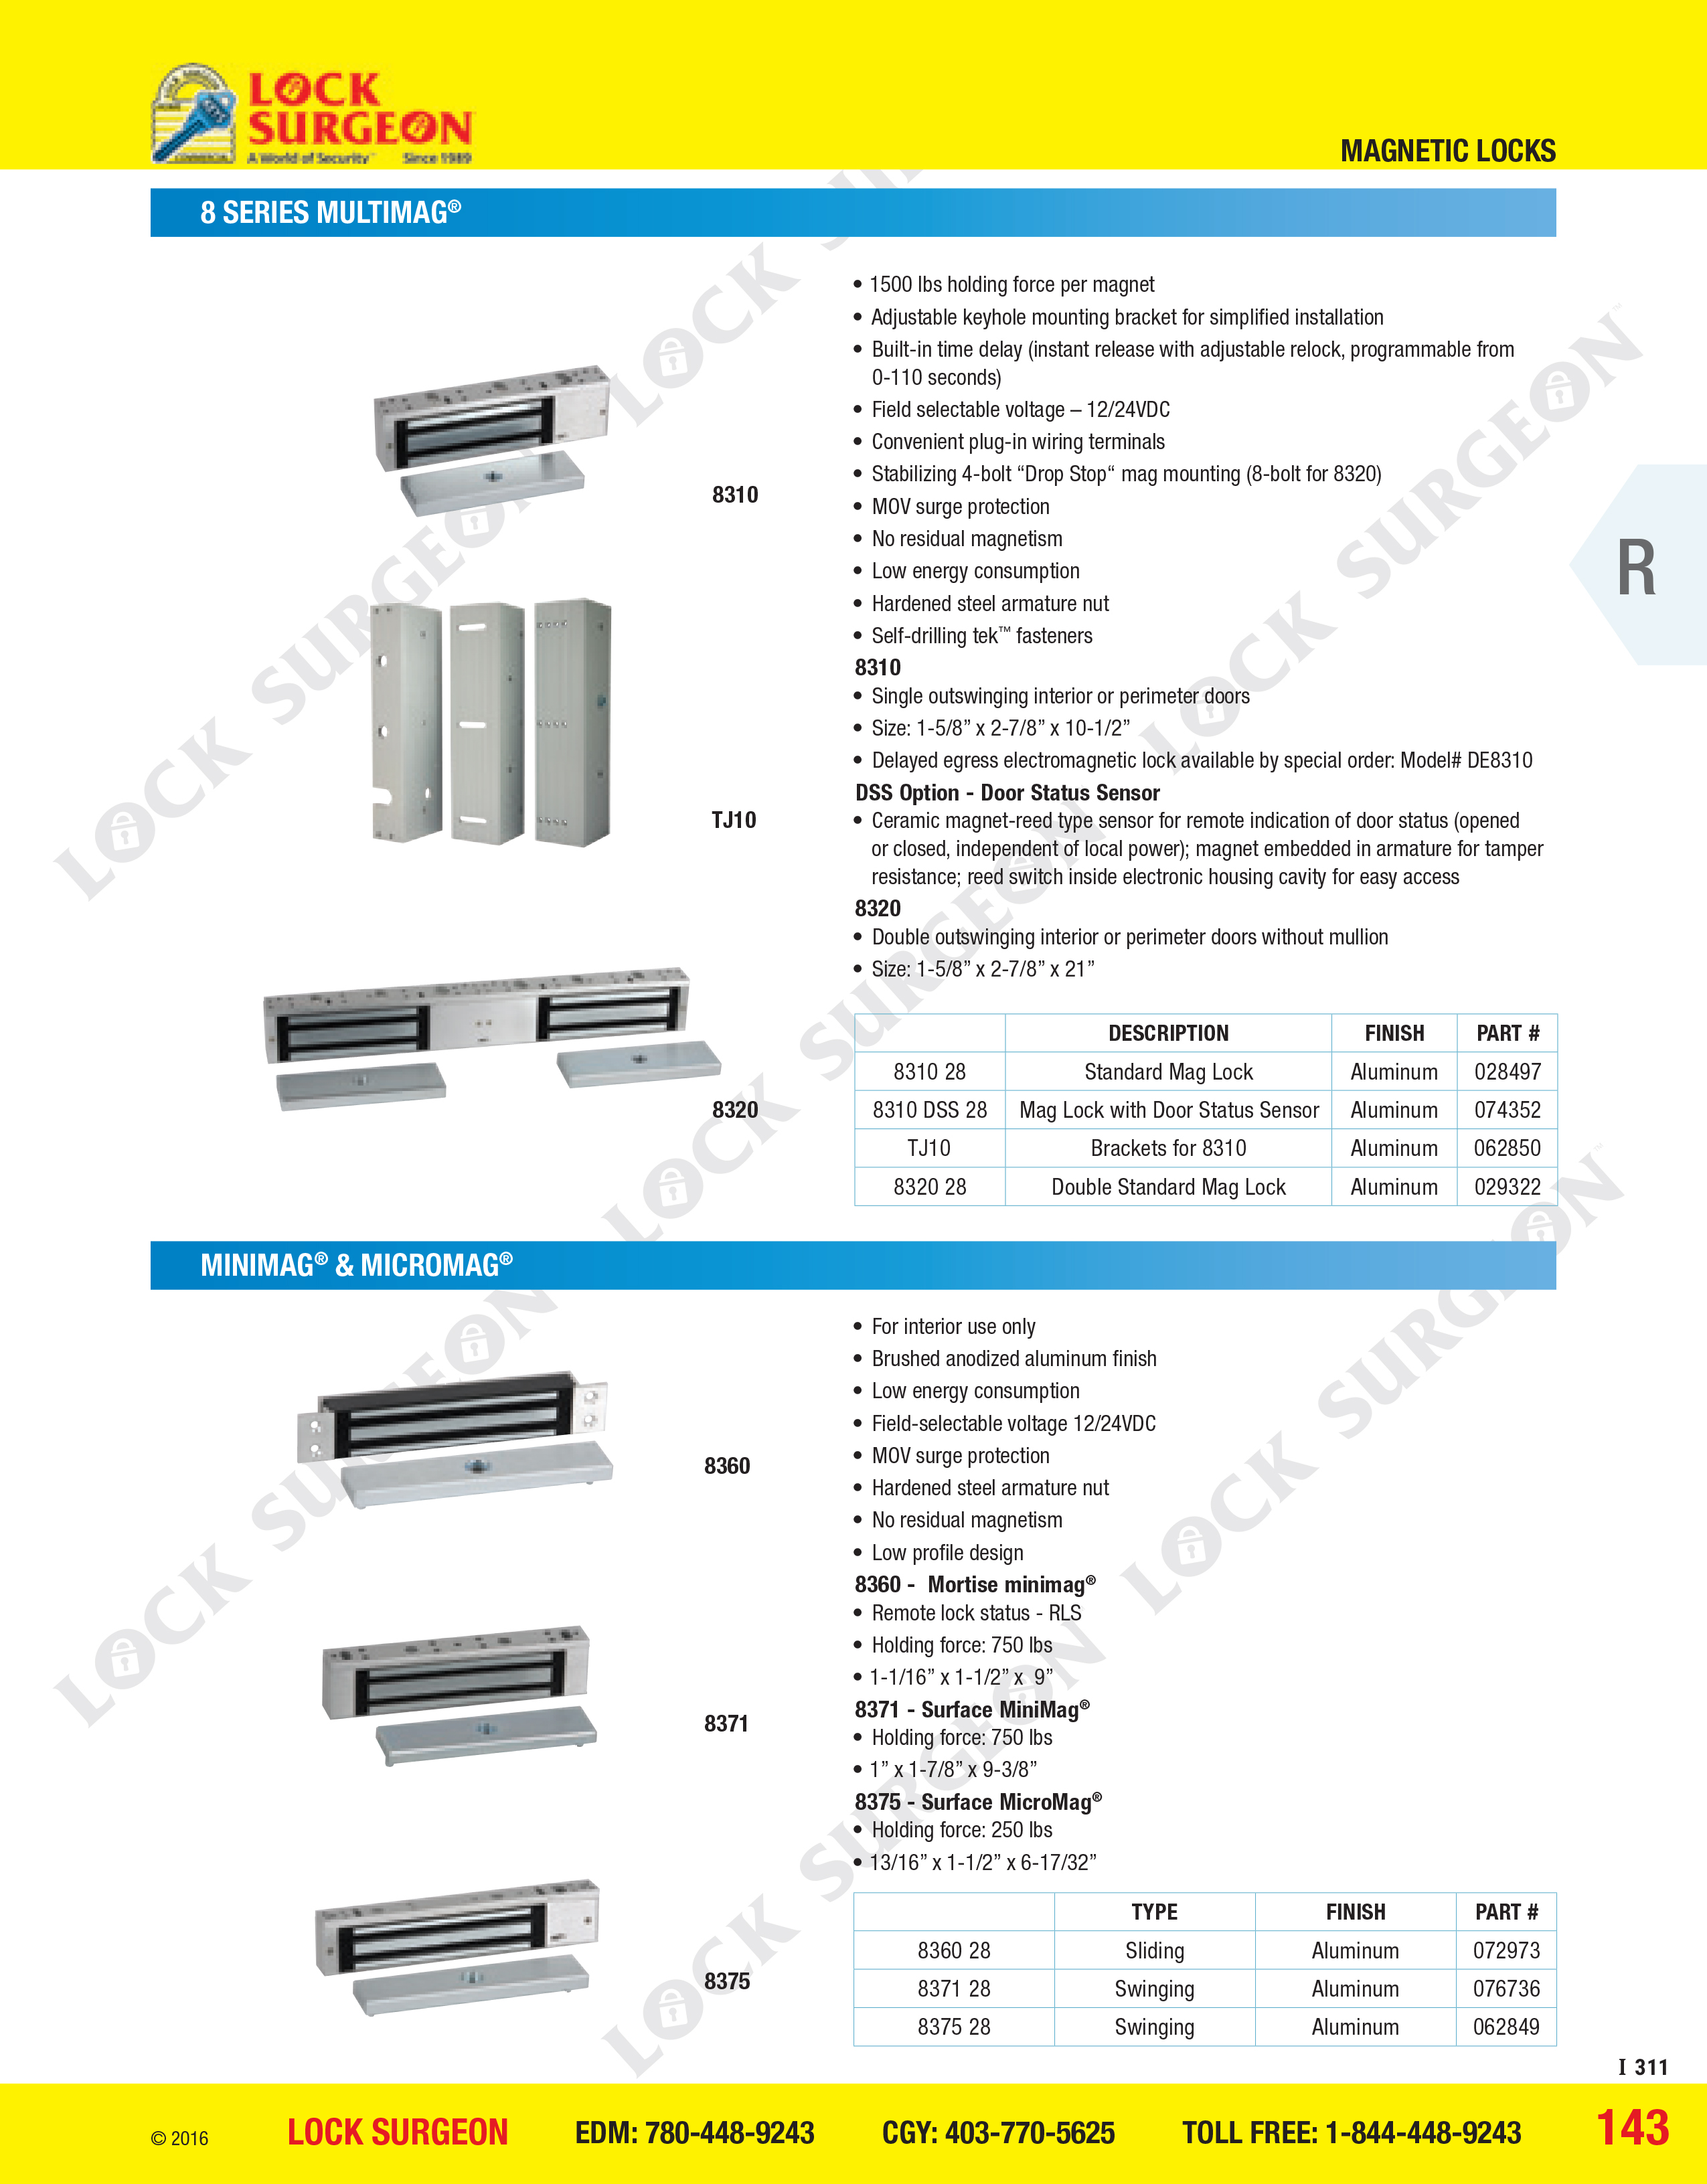 Magnetic Locks - 8 Series Multimag Minimag and Micromag